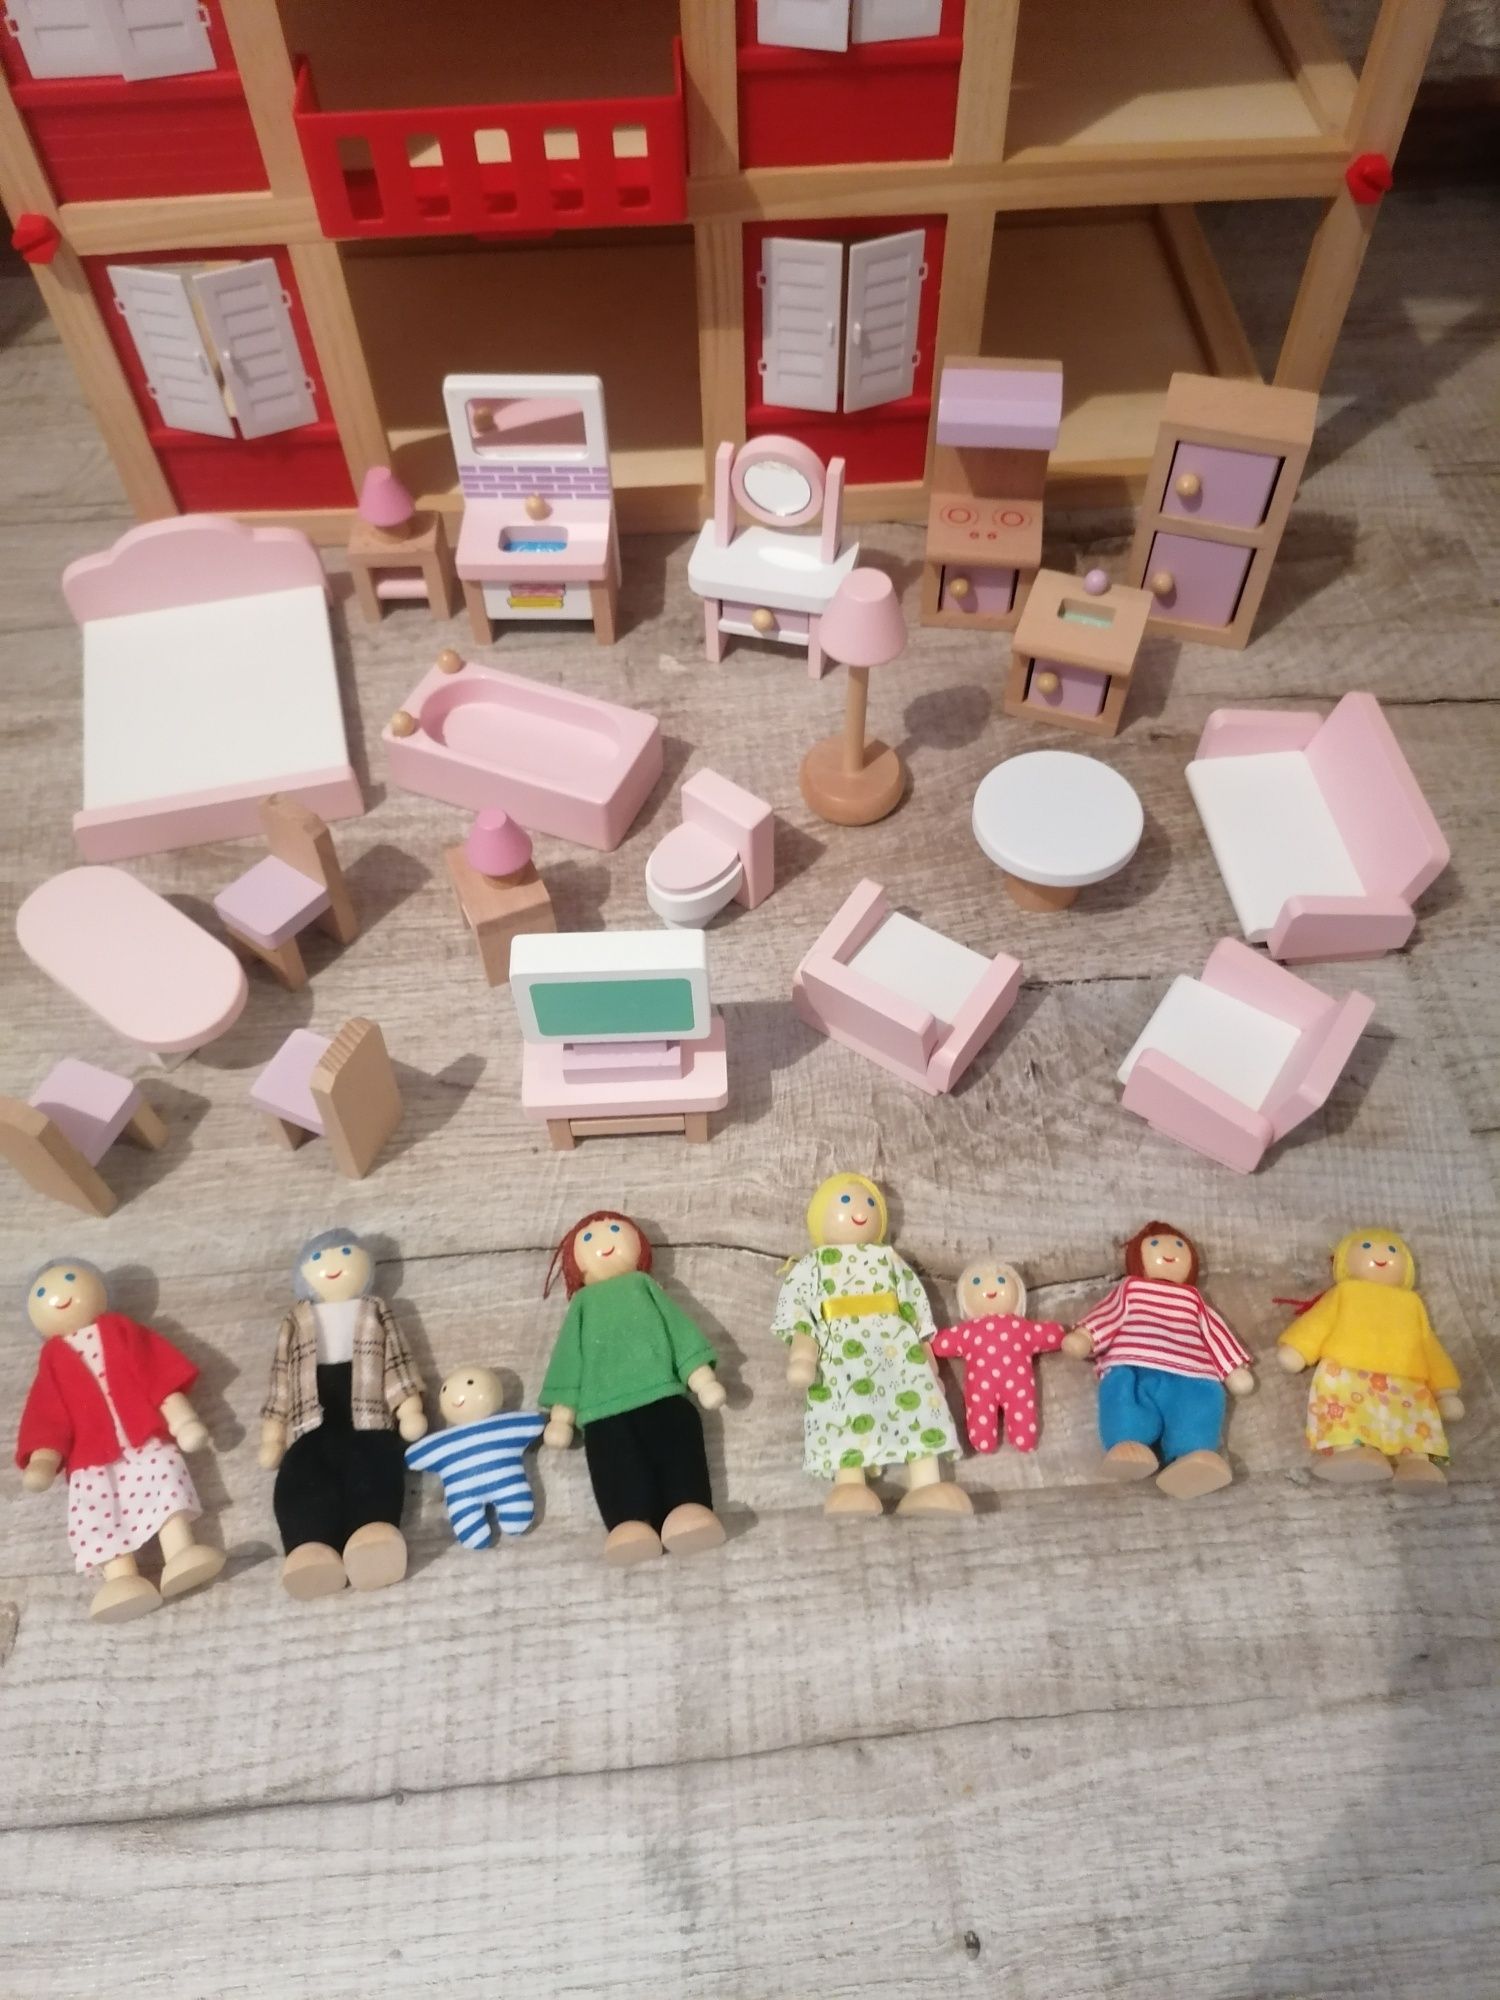 Кукольный домик с мебелью и куклами.